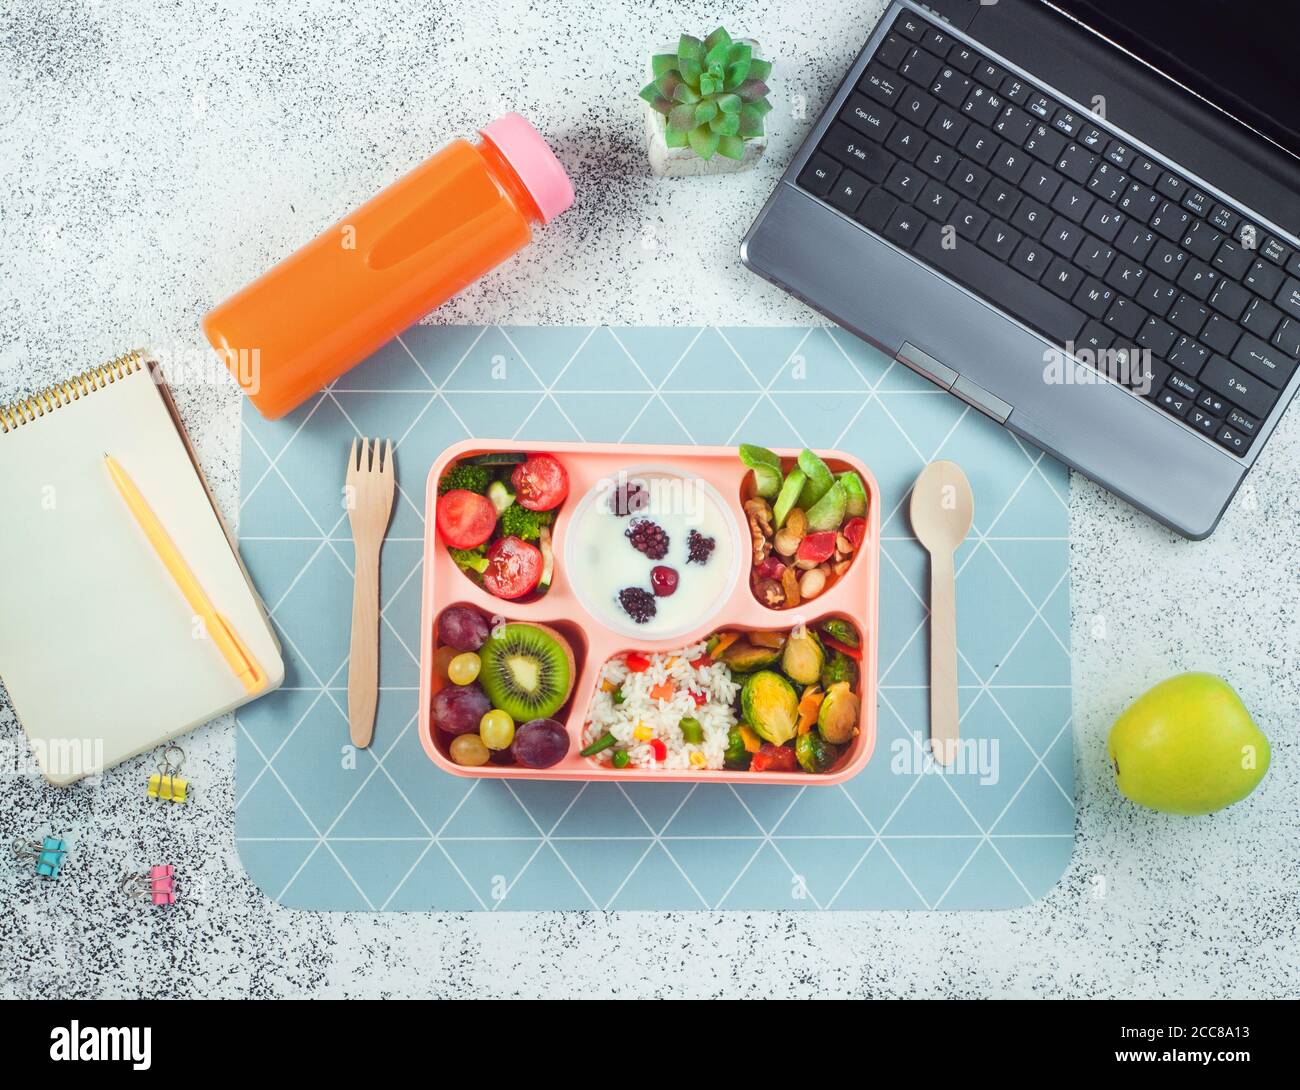 Panier repas avec riz, légumes et fruits, baies de yougurt sur table de bureau près de l'ordinateur portable Banque D'Images